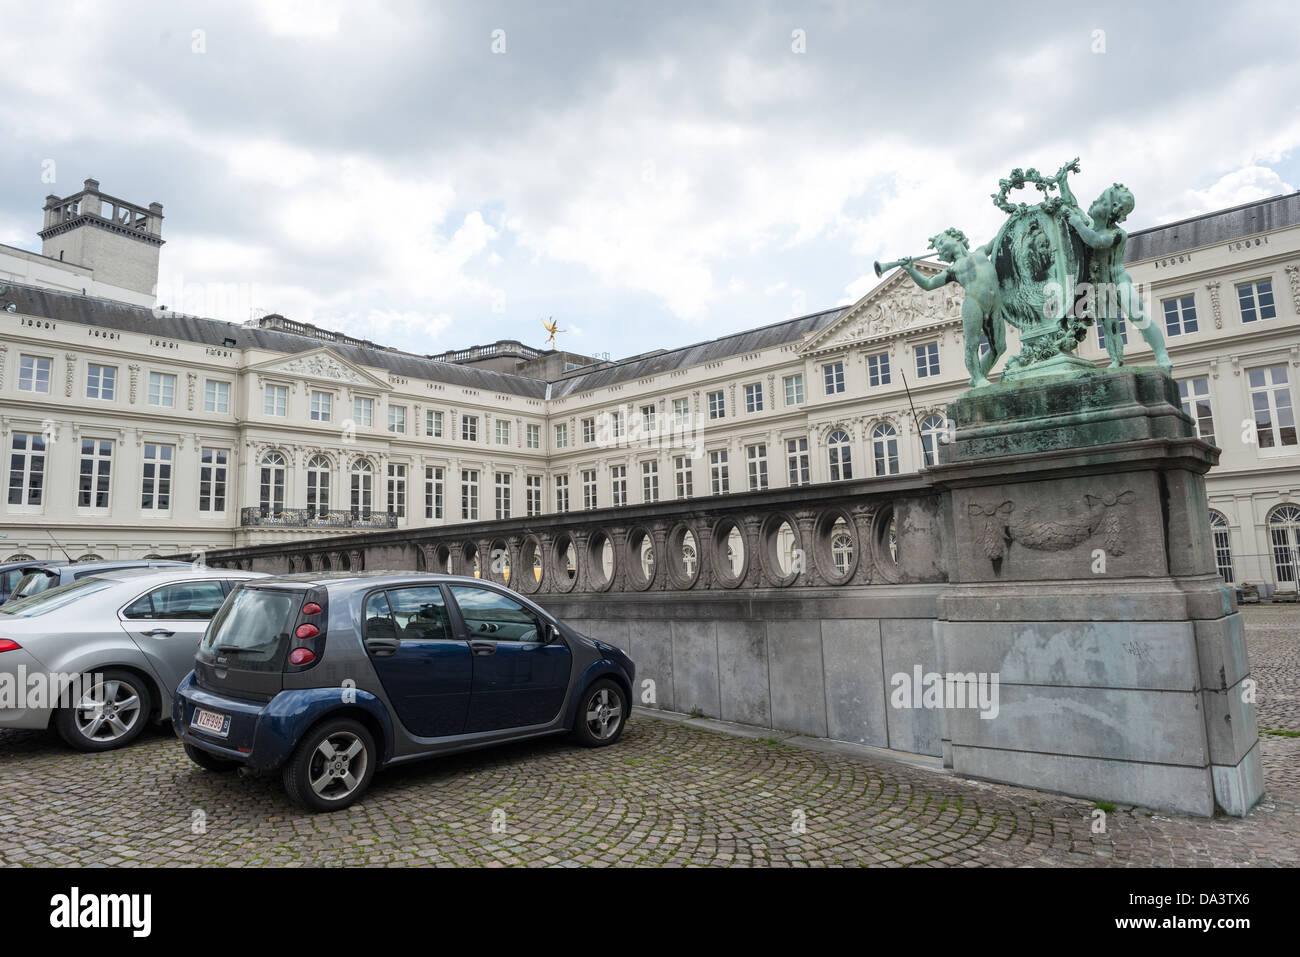 Brüssel, Belgien - Die Rückseite des Museum der Schönen Künste in Brüssel, Belgien, mit ihren mit Kopfstein gepflasterten Straßen. Stockfoto